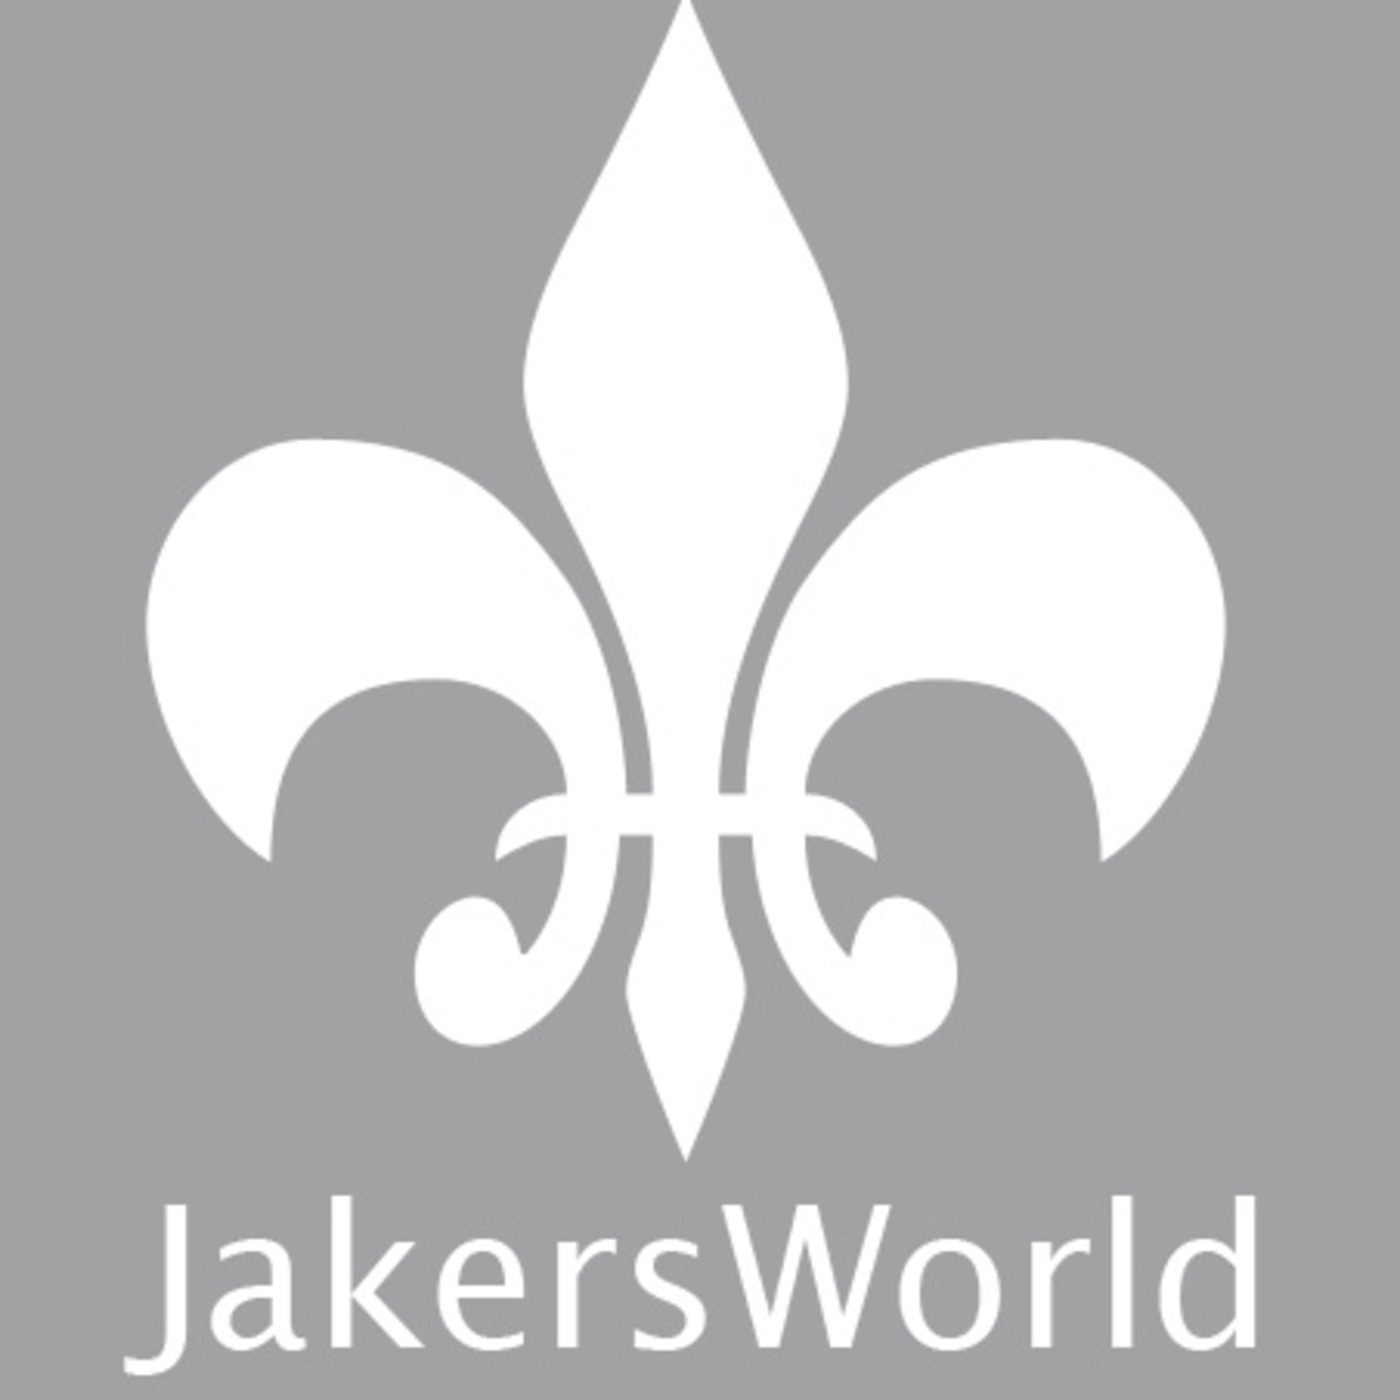 TheJakersWorld Podcast